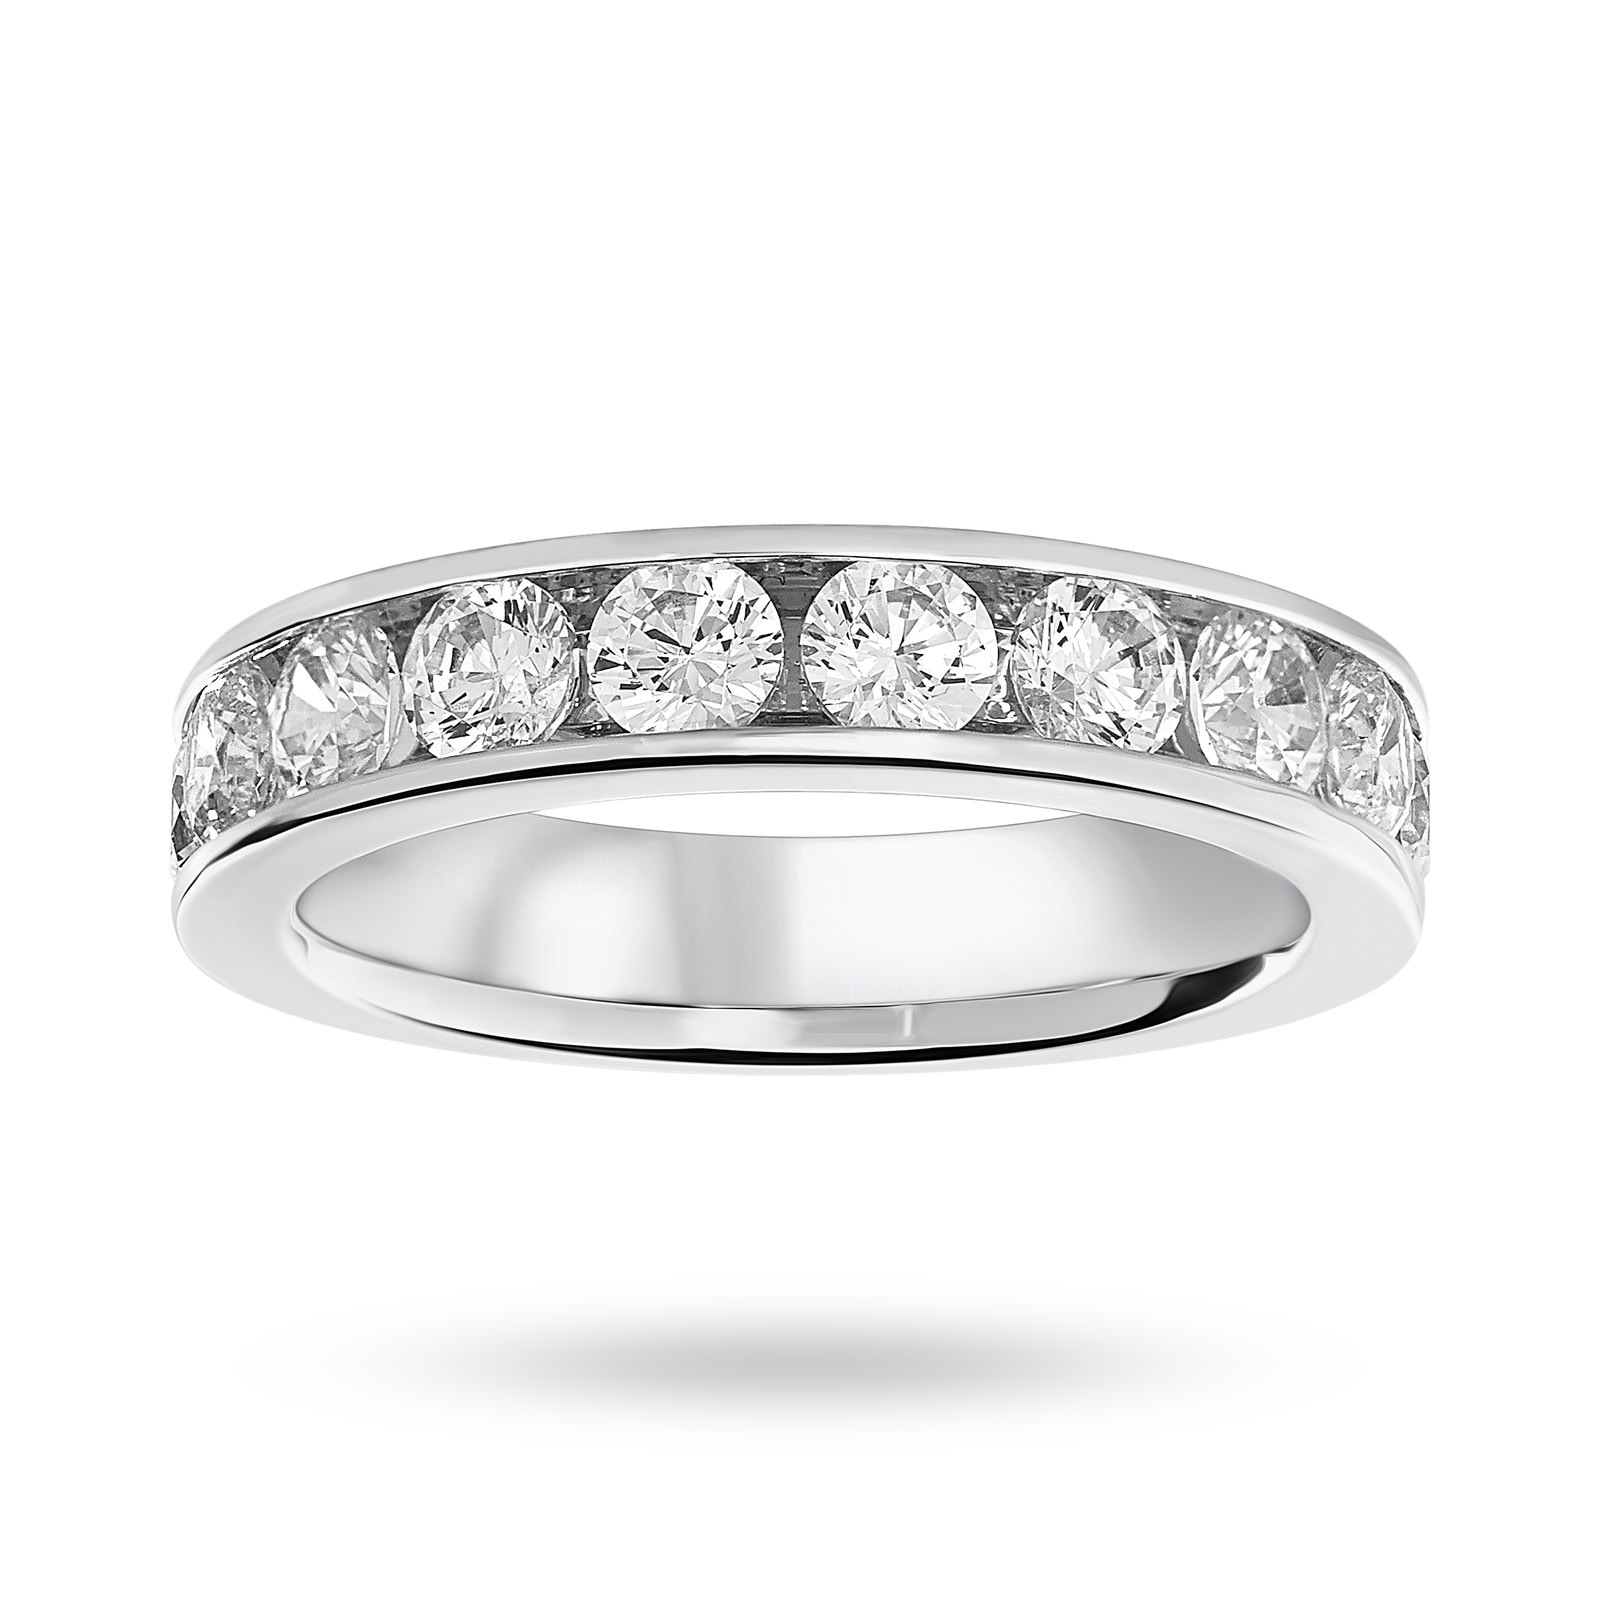 Platinum 1.50 Carat Brilliant Cut Half Eternity Ring - Ring Size L